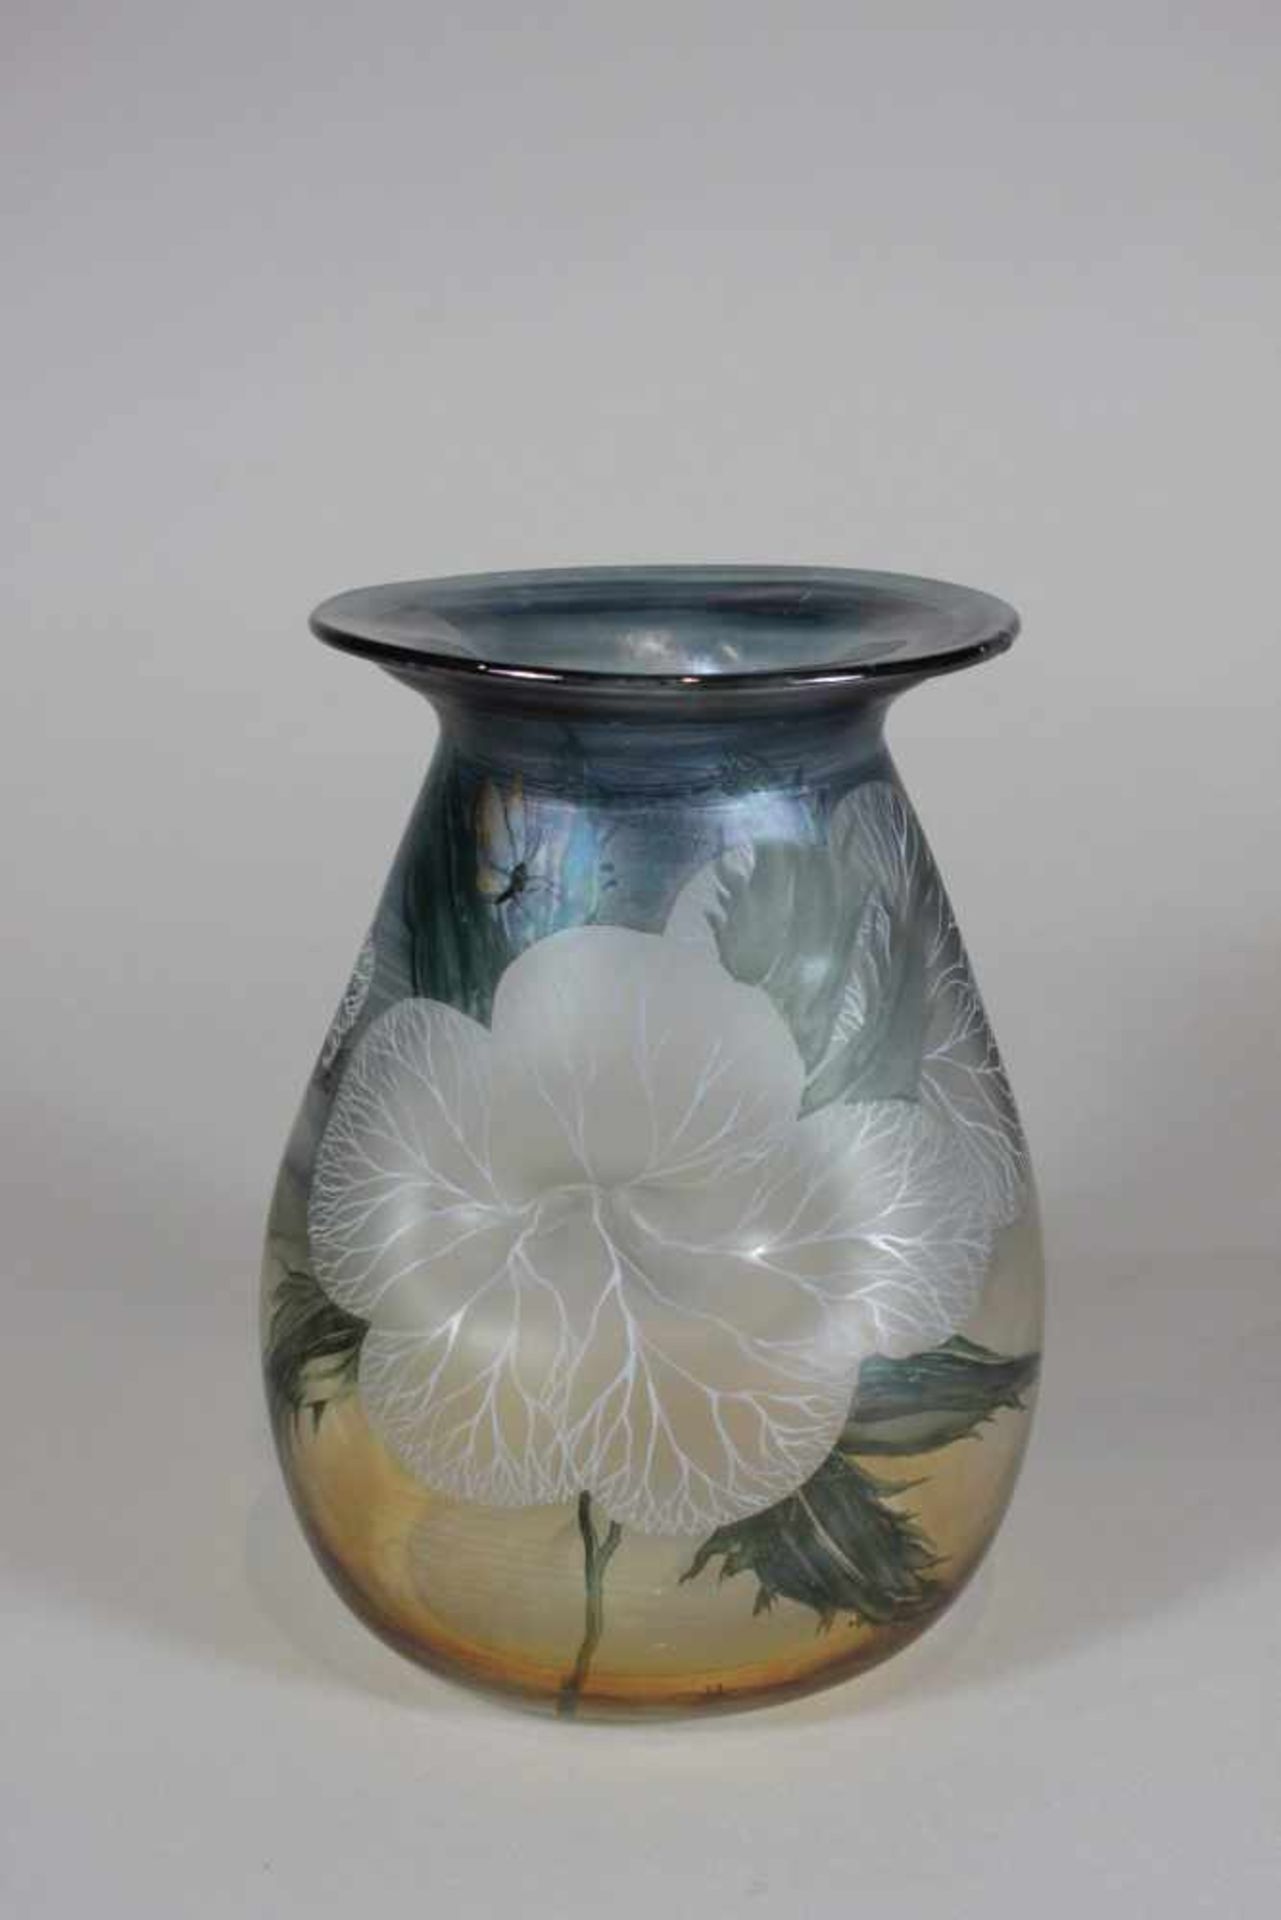 Erwin Eisch Vase Studioglas, signiert und datiert: Eisch 85 B. S., farbloses Glas, nicht durchgehend